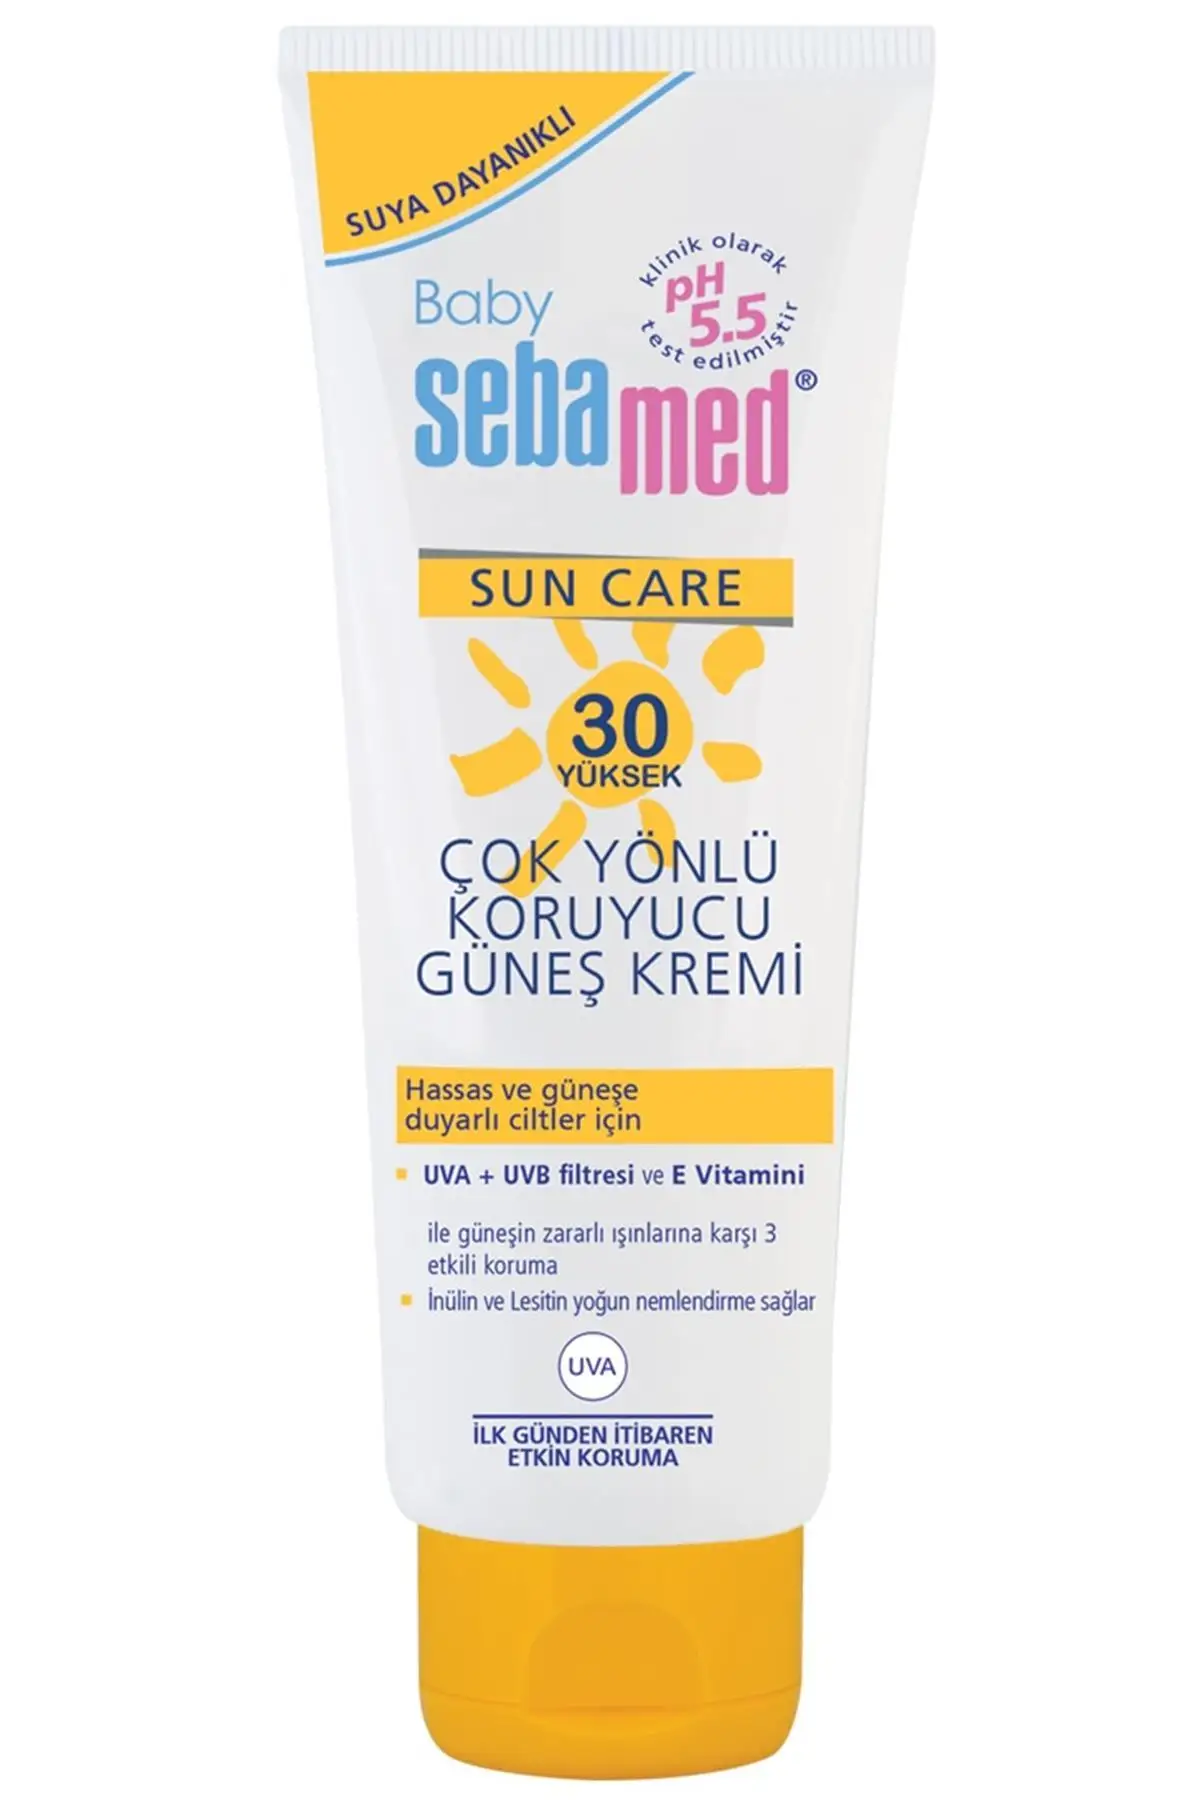 

Бренд: Sebamed Sun Bebe 30-факторный крем 75 мл Категория: солнцезащитный крем для тела